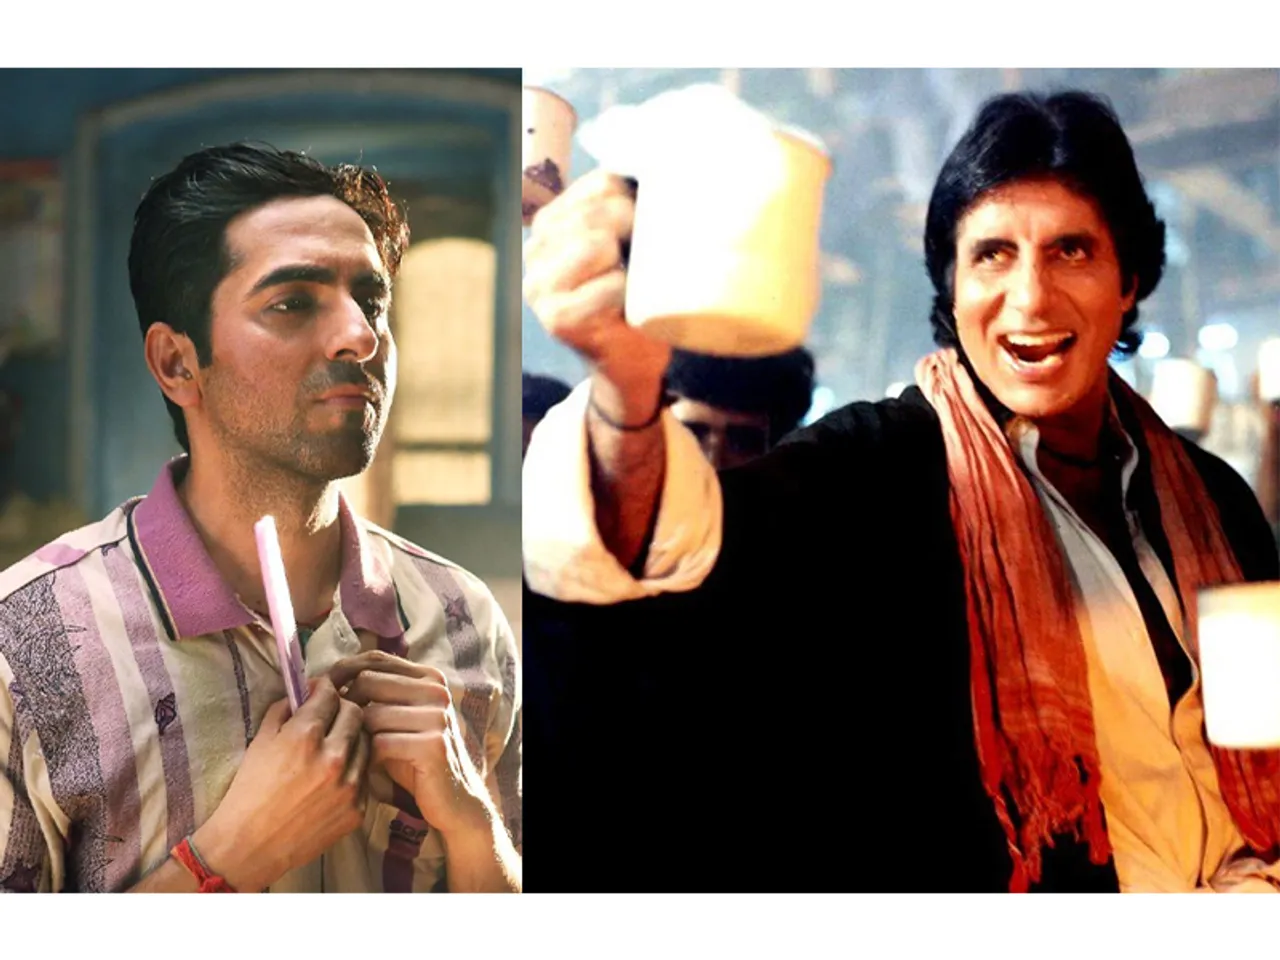 फिल्म 'हम' में अमिताभ बच्चन को देख अभिनेता बनने के लिए इंस्पायर हुए थे आयुष्मान खुराना, गुलाबो सिताबो की रिलीज के बाद शेयर किया खास नोट